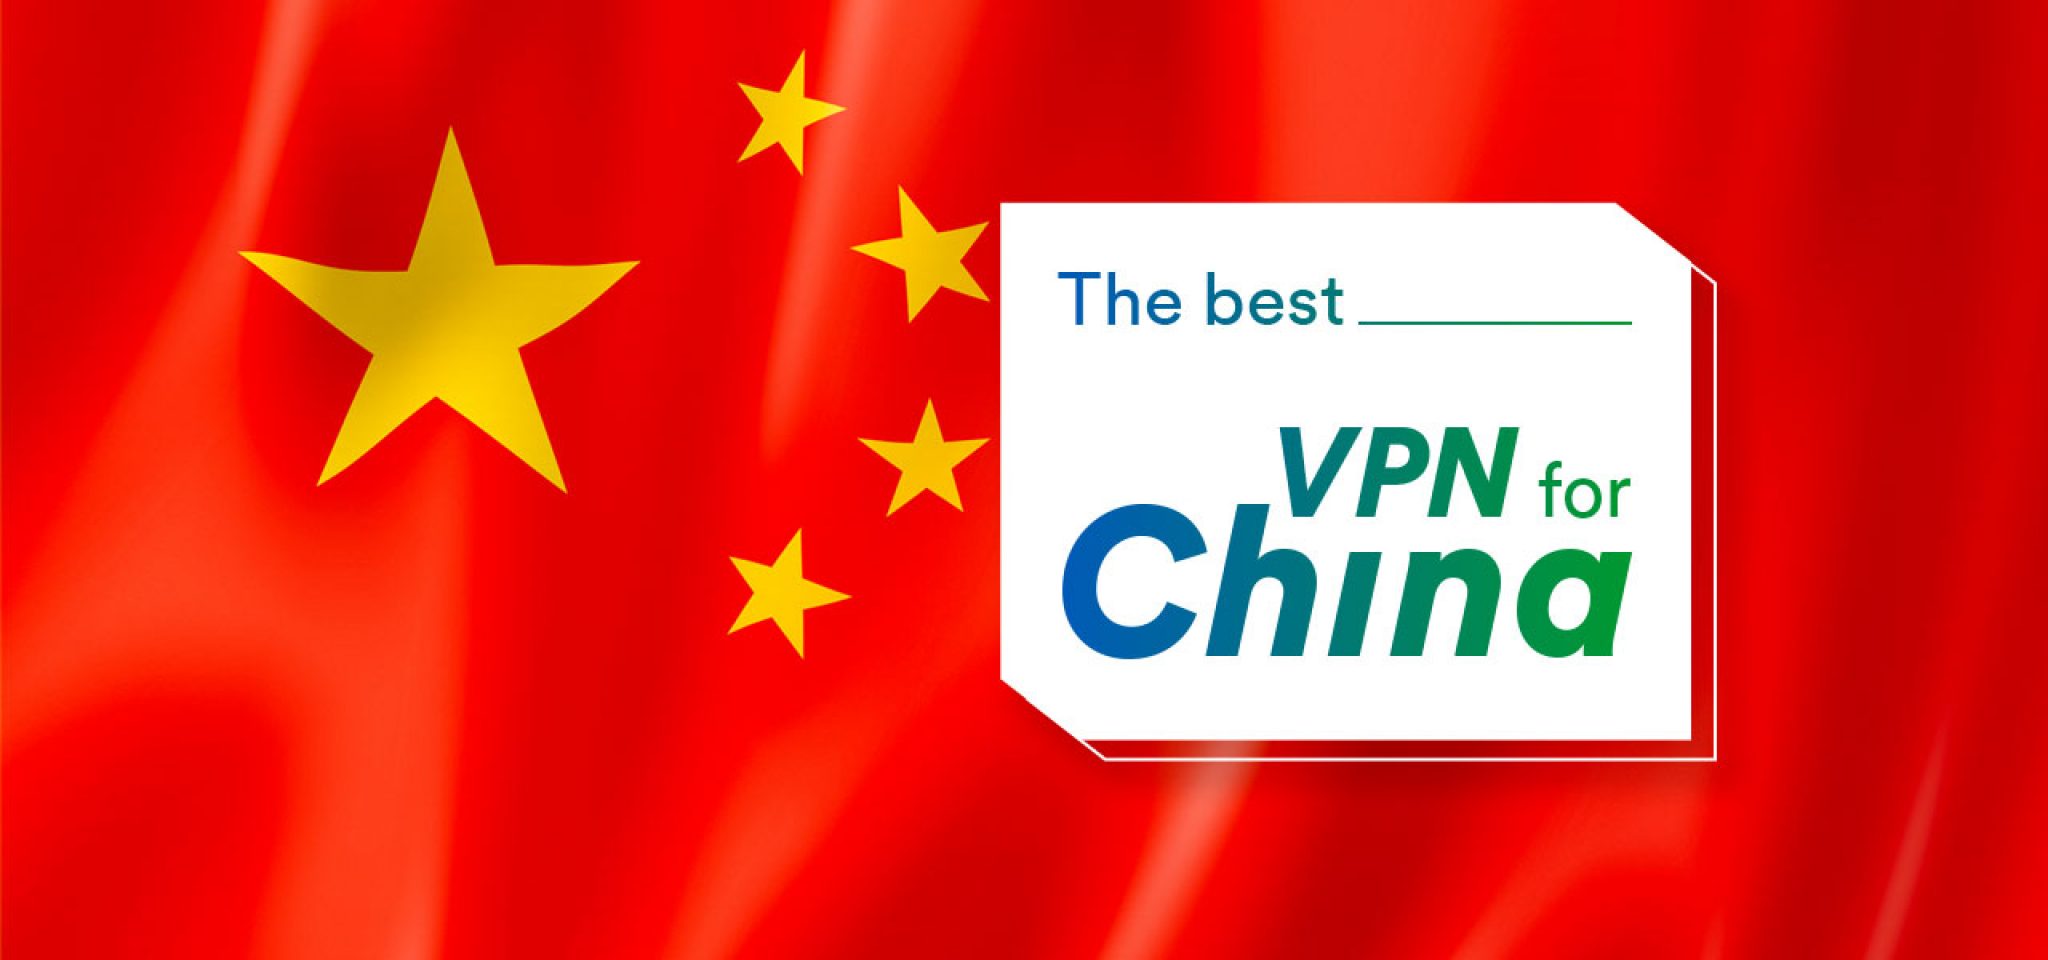 conexiones vpn for china